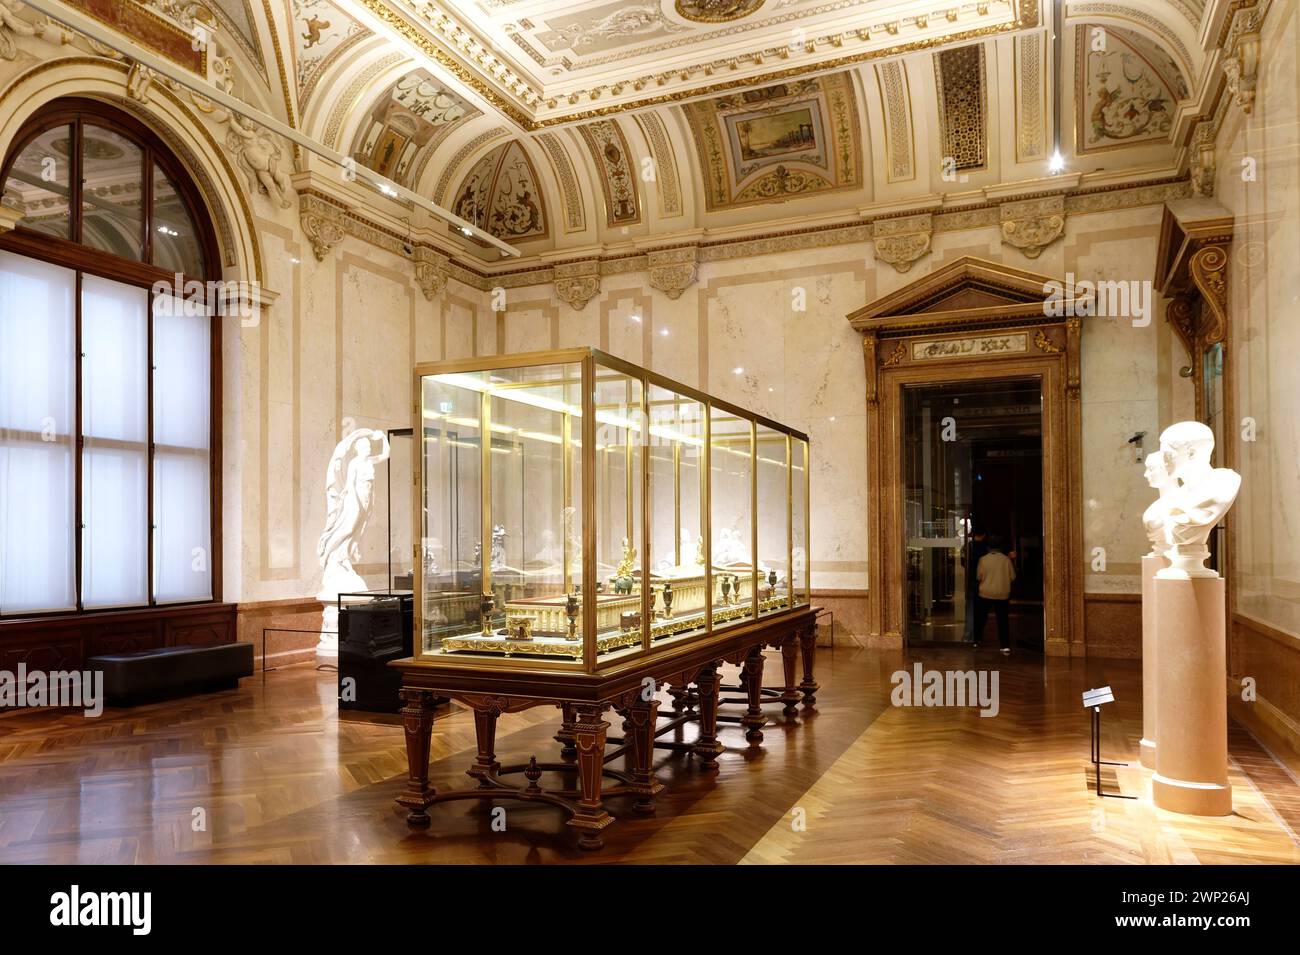 Vienne, Autriche. La collection antique du Musée d'histoire de l'art de Vienne (KHM) Banque D'Images